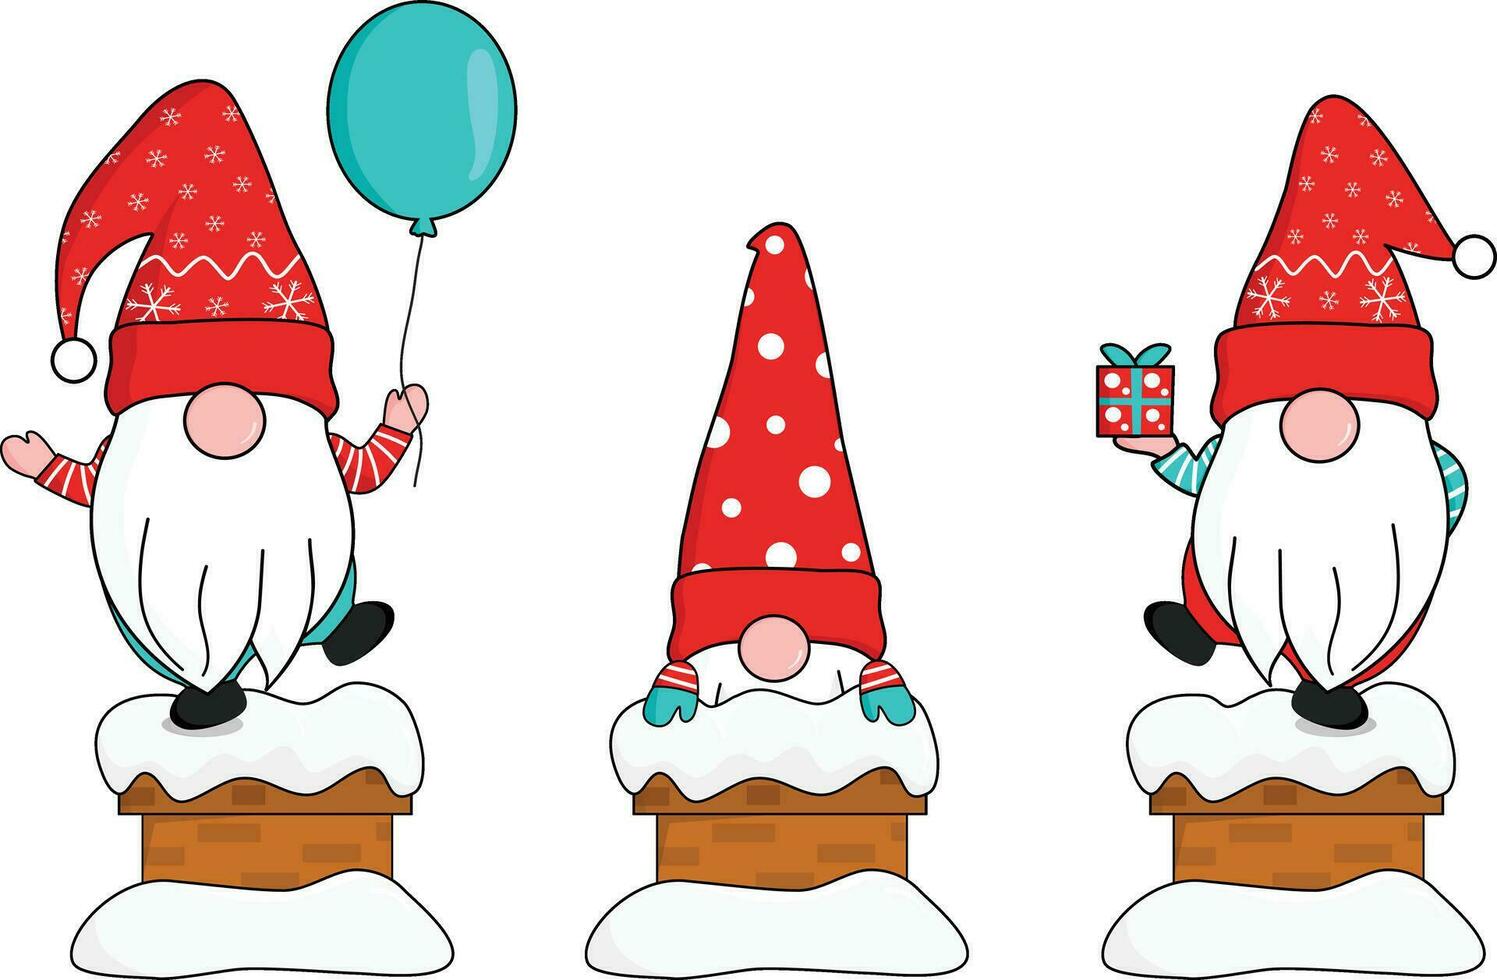 süß drei Zwerge im rot Schneeflocken Santa Klausel Hut Show oben von schneebedeckt Kamin halten Geschenk Box und schwebend Ballon. Gruß und feiern Weihnachten und Neu Jahr. Vektor